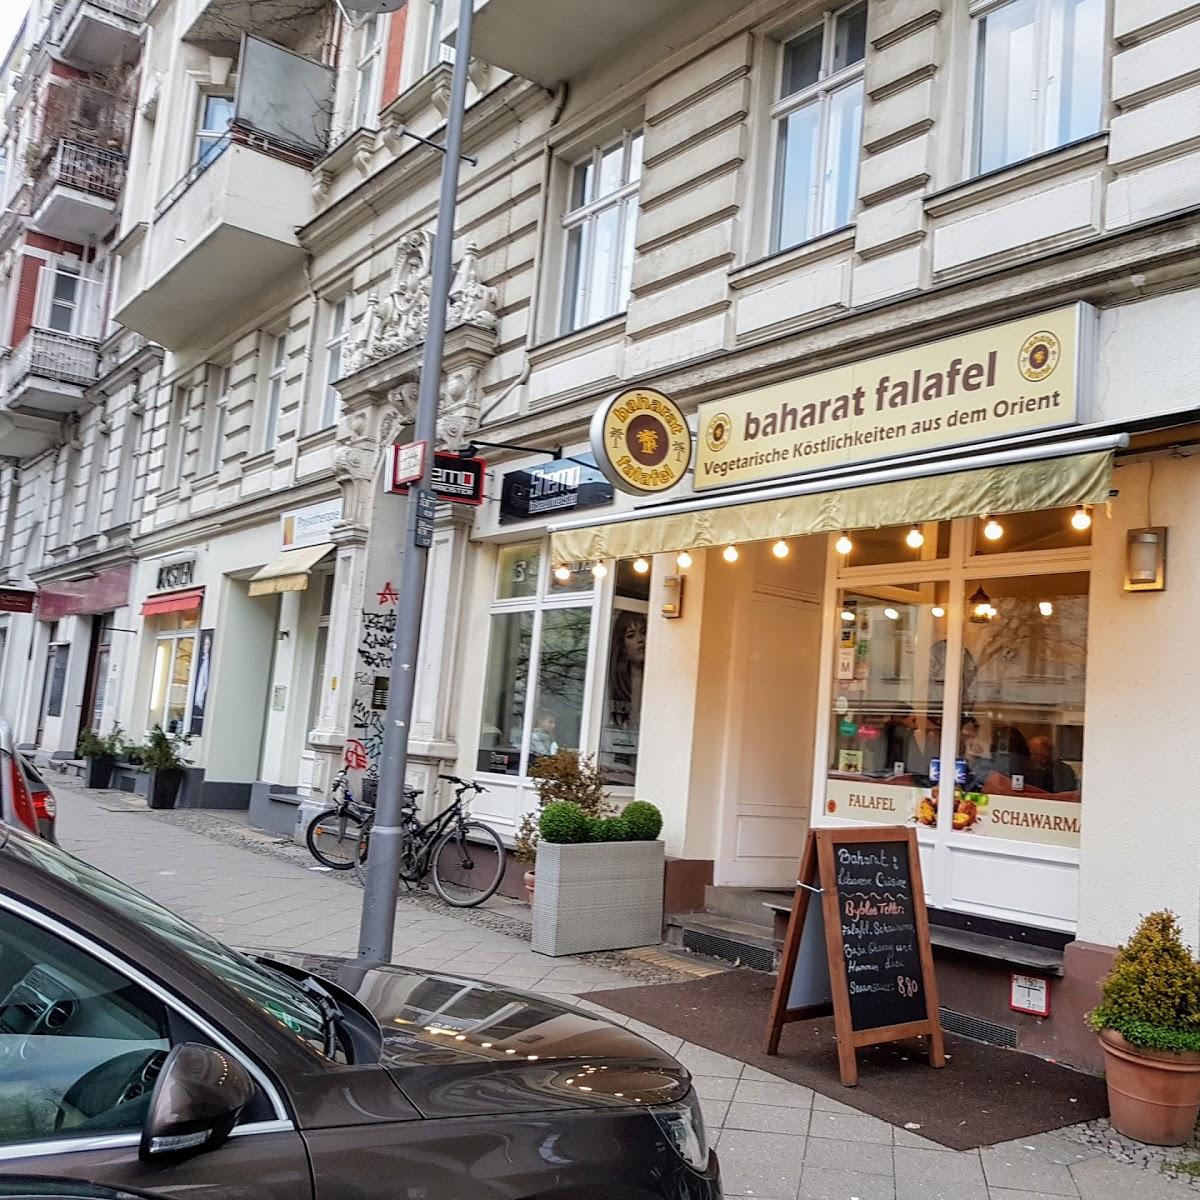 Restaurant "Baharat Falafel" in Berlin